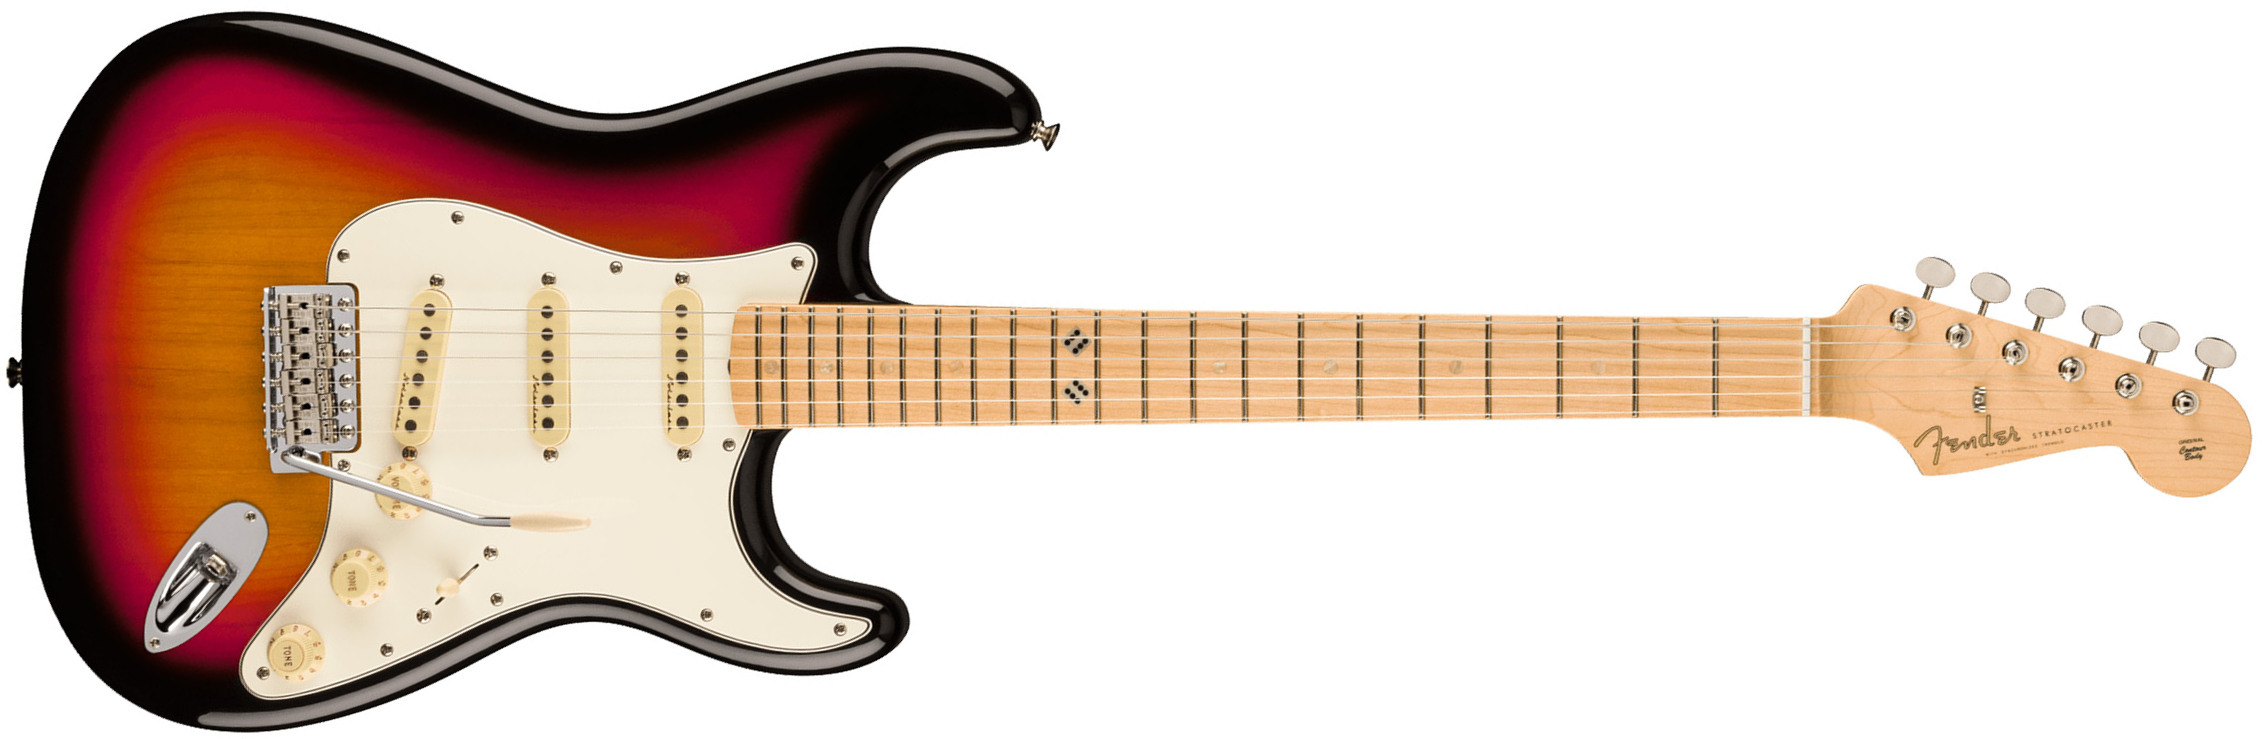 Fender Steve Lacy Strat People Pleaser Mex Signature 3s Trem Mn - Chaos Burst - Guitarra eléctrica con forma de str. - Main picture